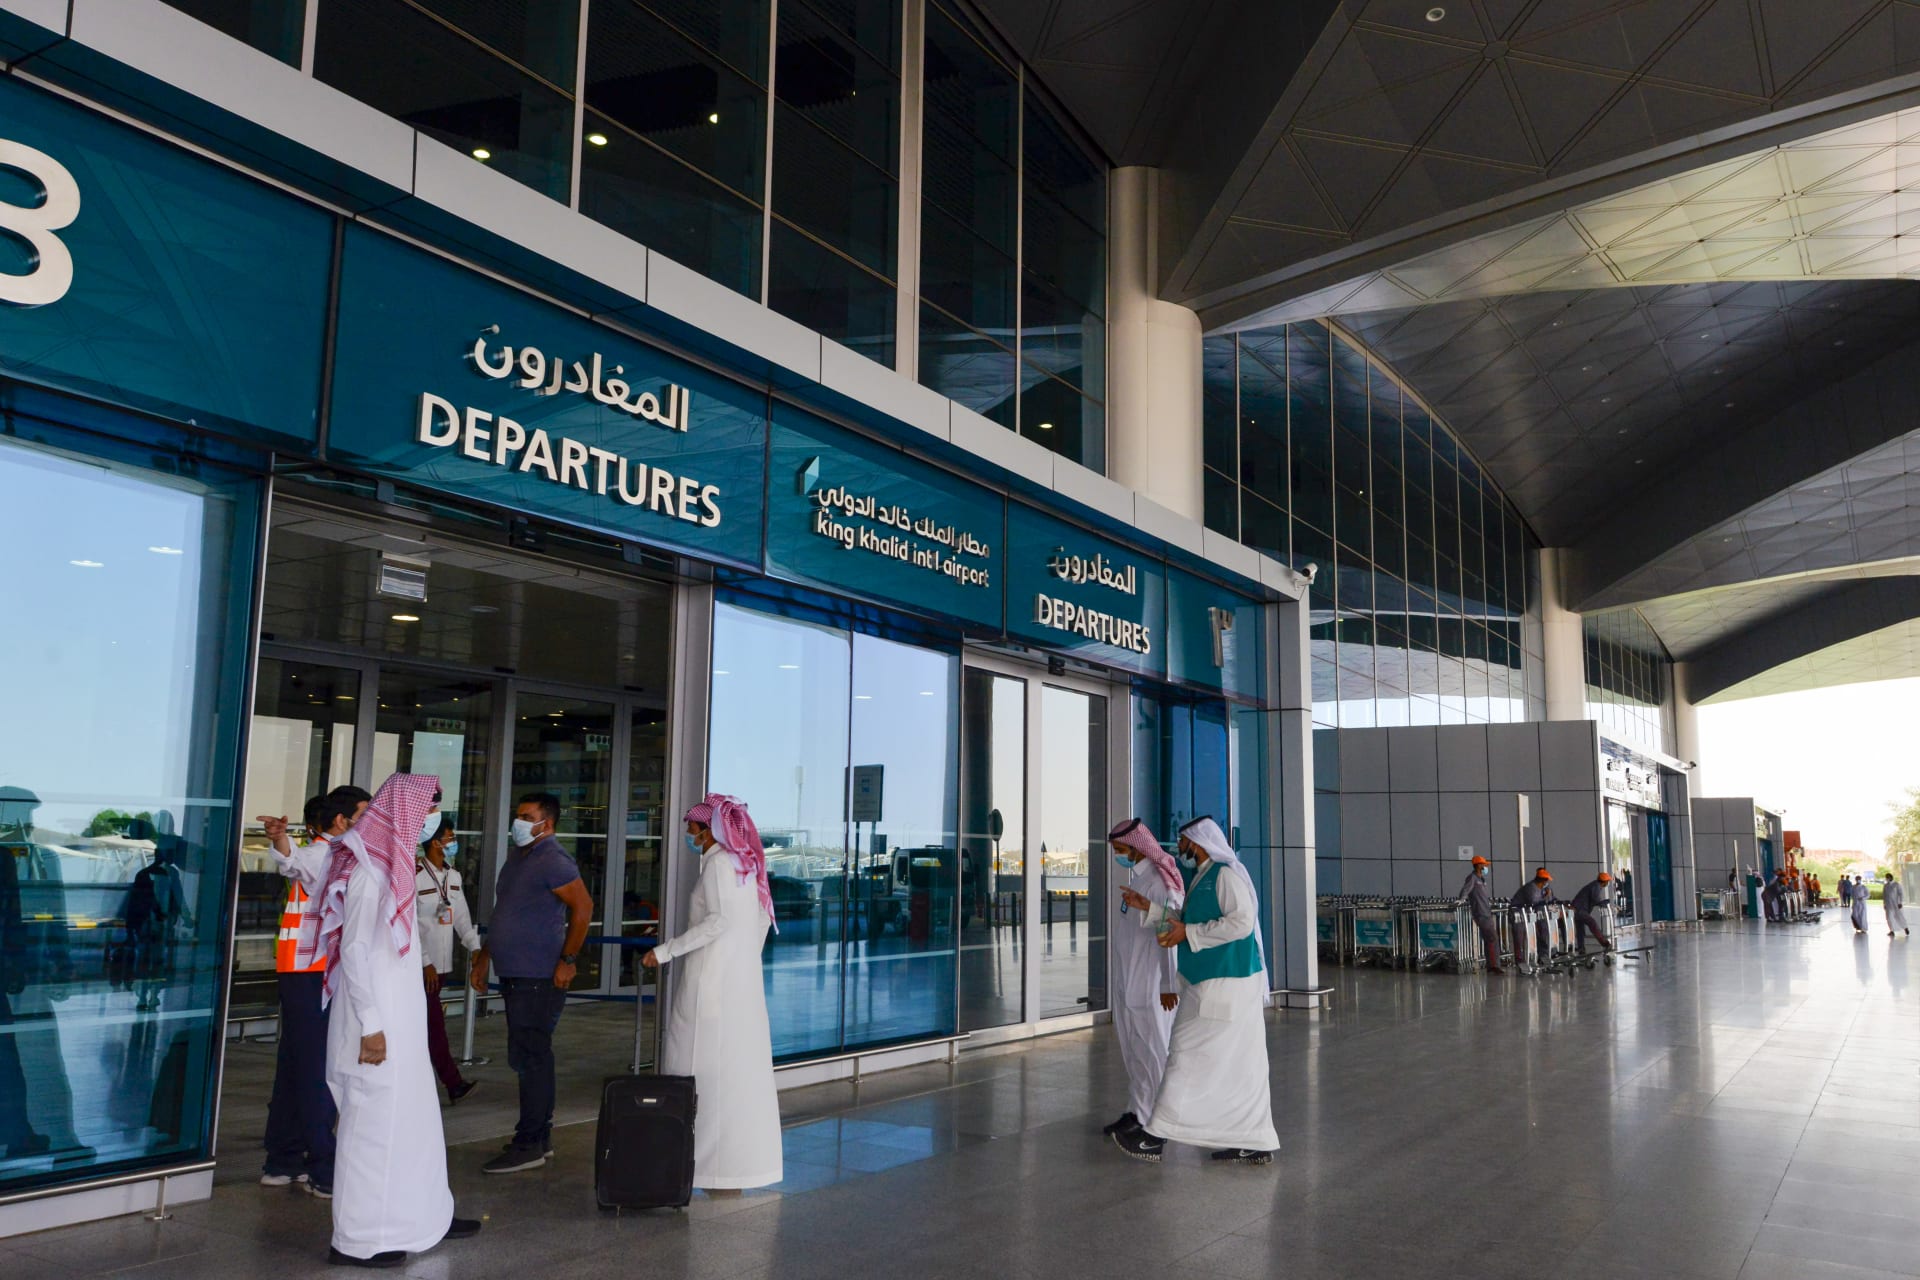  مسافرون سعوديون يصلون إلى صالة 5 في مطار الملك فهد الدولي 